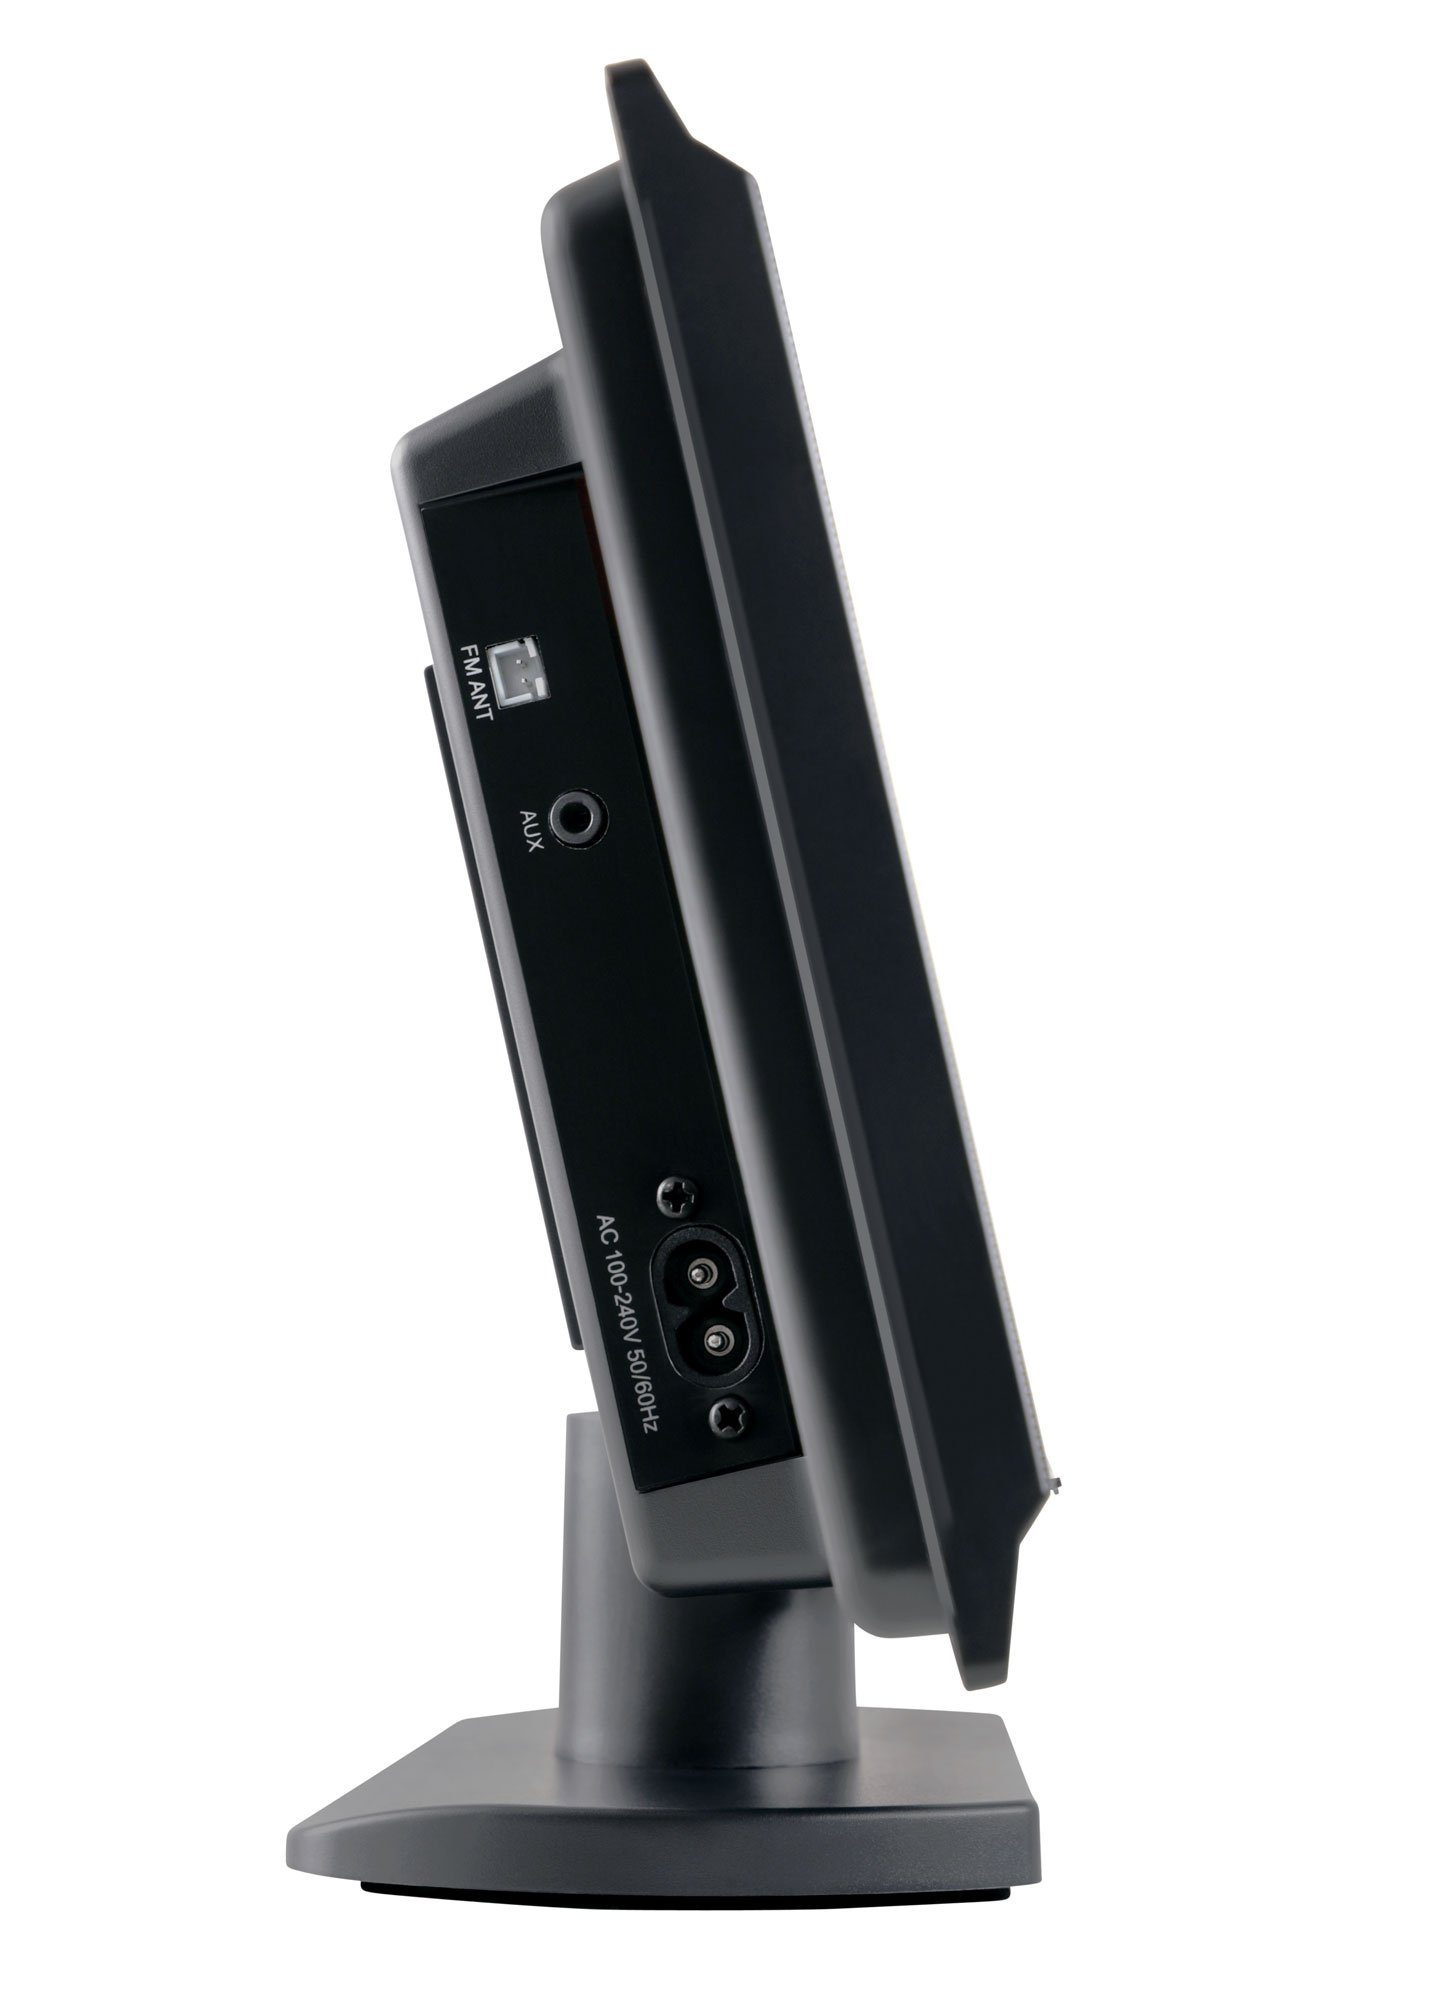 6,00 MC-DVD-90 Microanlage Beatfoxx Vertikal Bluetooth, mit und W, USB/SD, DVD-Player, CD/MP3, (UKW/MW-Radio, HDMI AUX) Stereoanlage